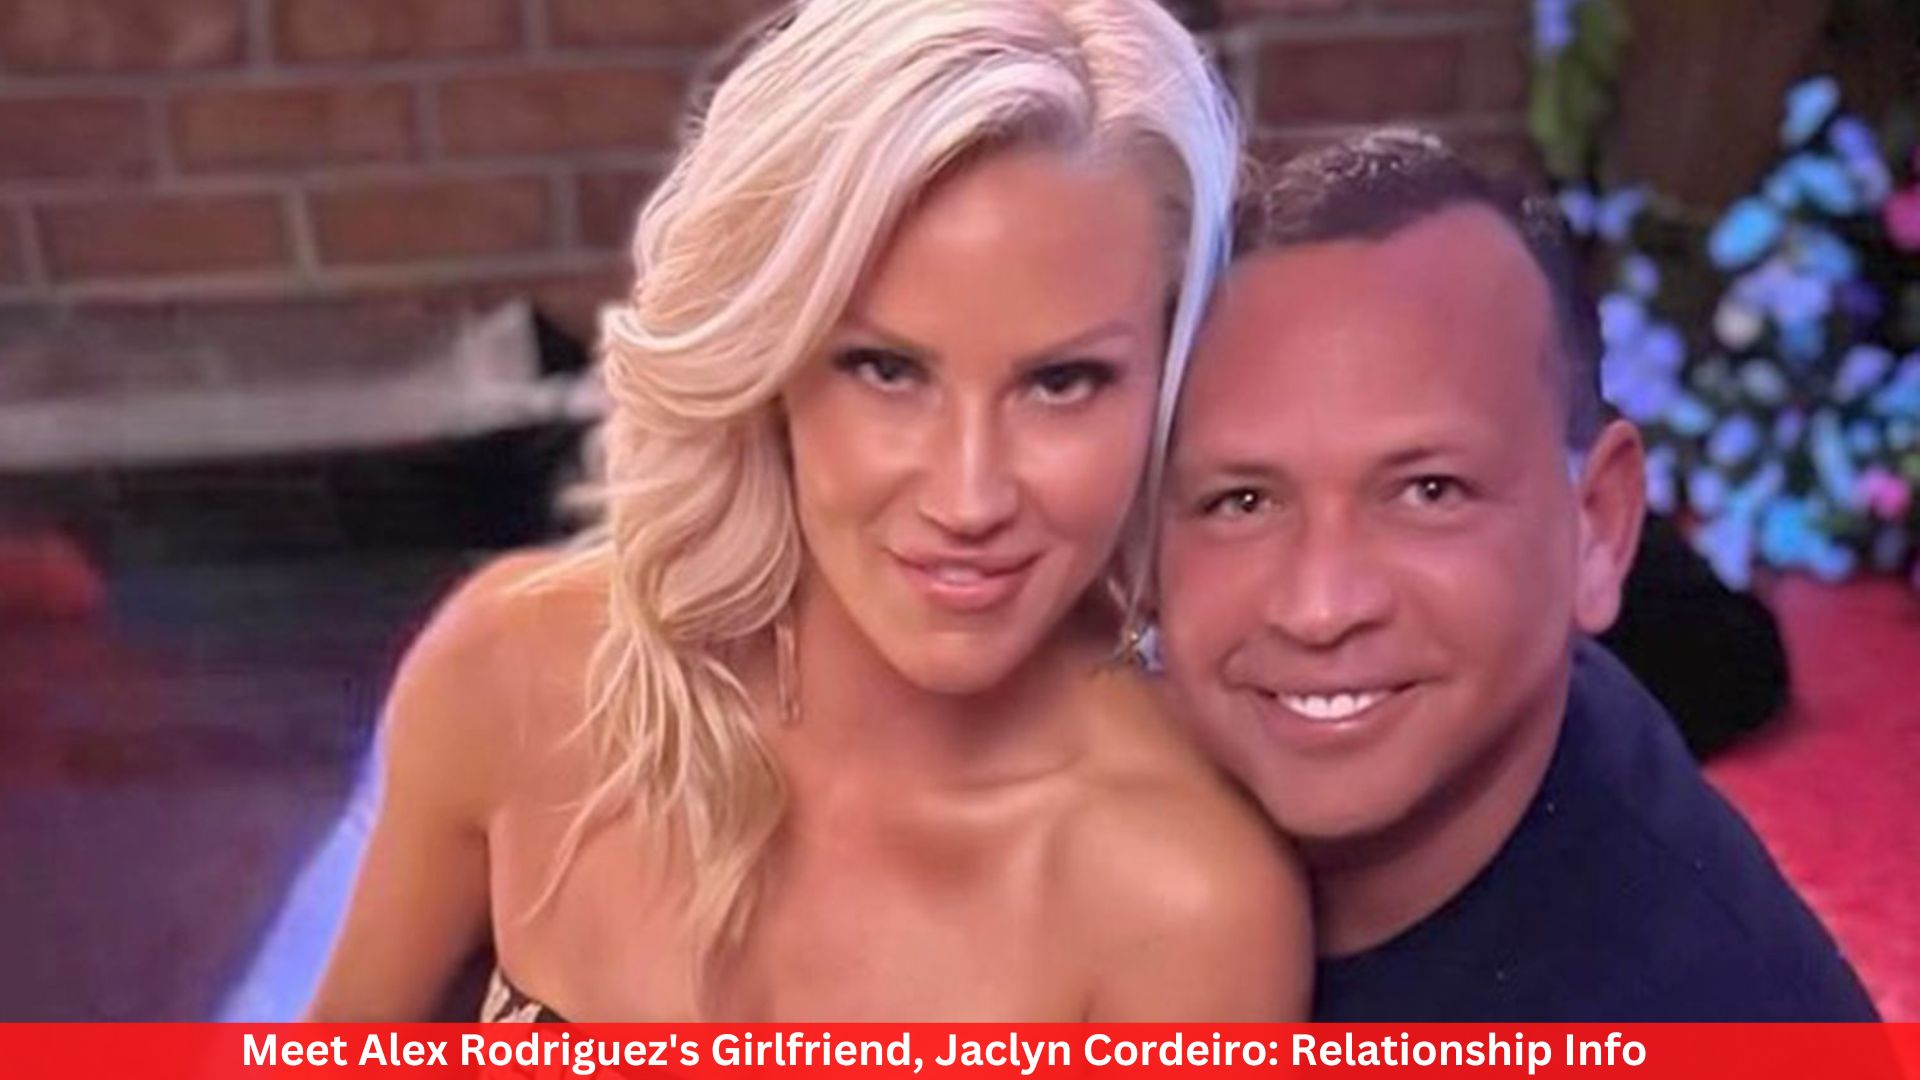 Meet Alex Rodriguez's Girlfriend, Jaclyn Cordeiro: Relationship Info